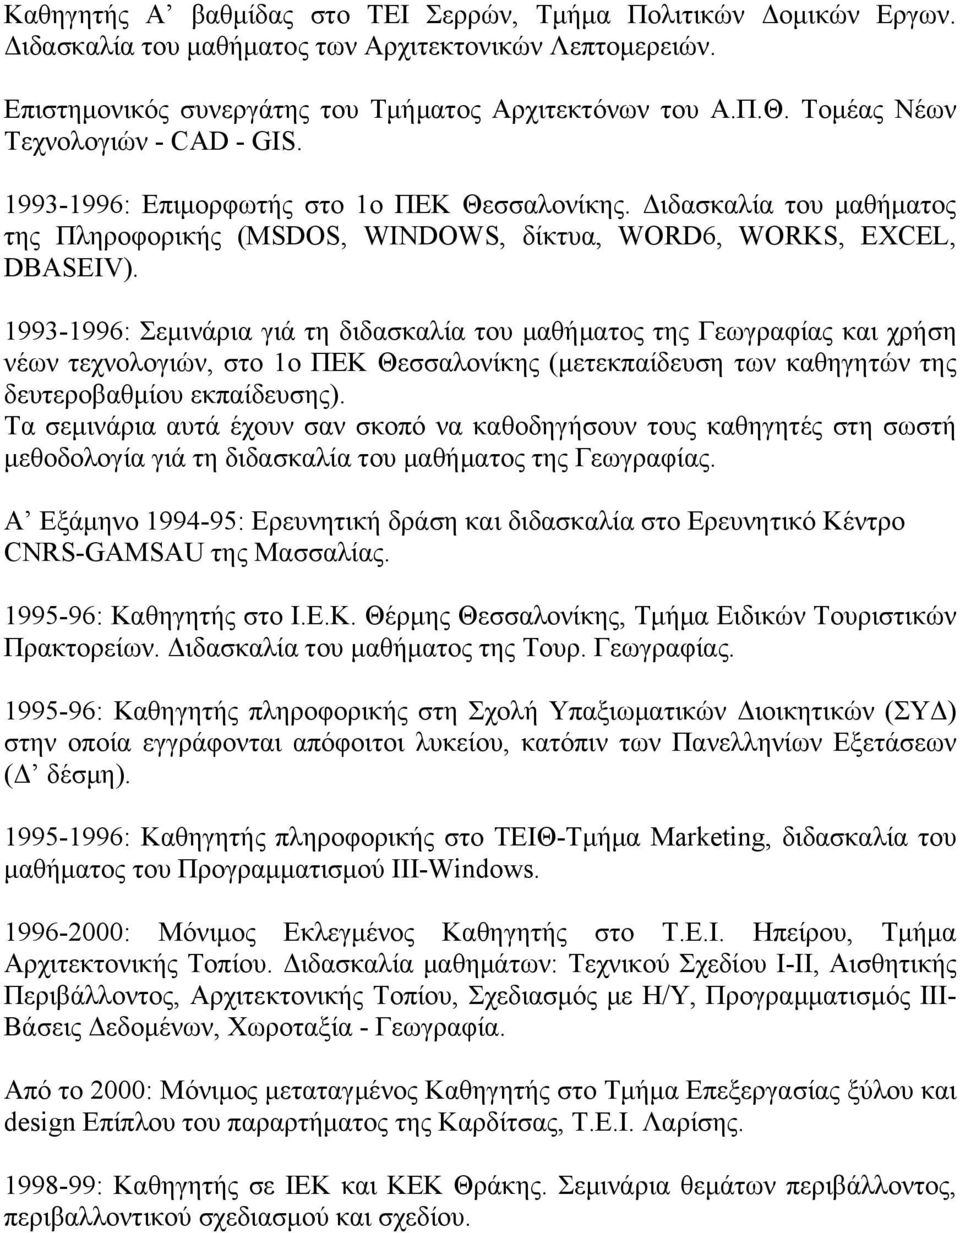 1993-1996: Σεμινάρια γιά τη διδασκαλία του μαθήματος της Γεωγραφίας και χρήση νέων τεχνολογιών, στο 1ο ΠΕΚ Θεσσαλονίκης (μετεκπαίδευση των καθηγητών της δευτεροβαθμίου εκπαίδευσης).